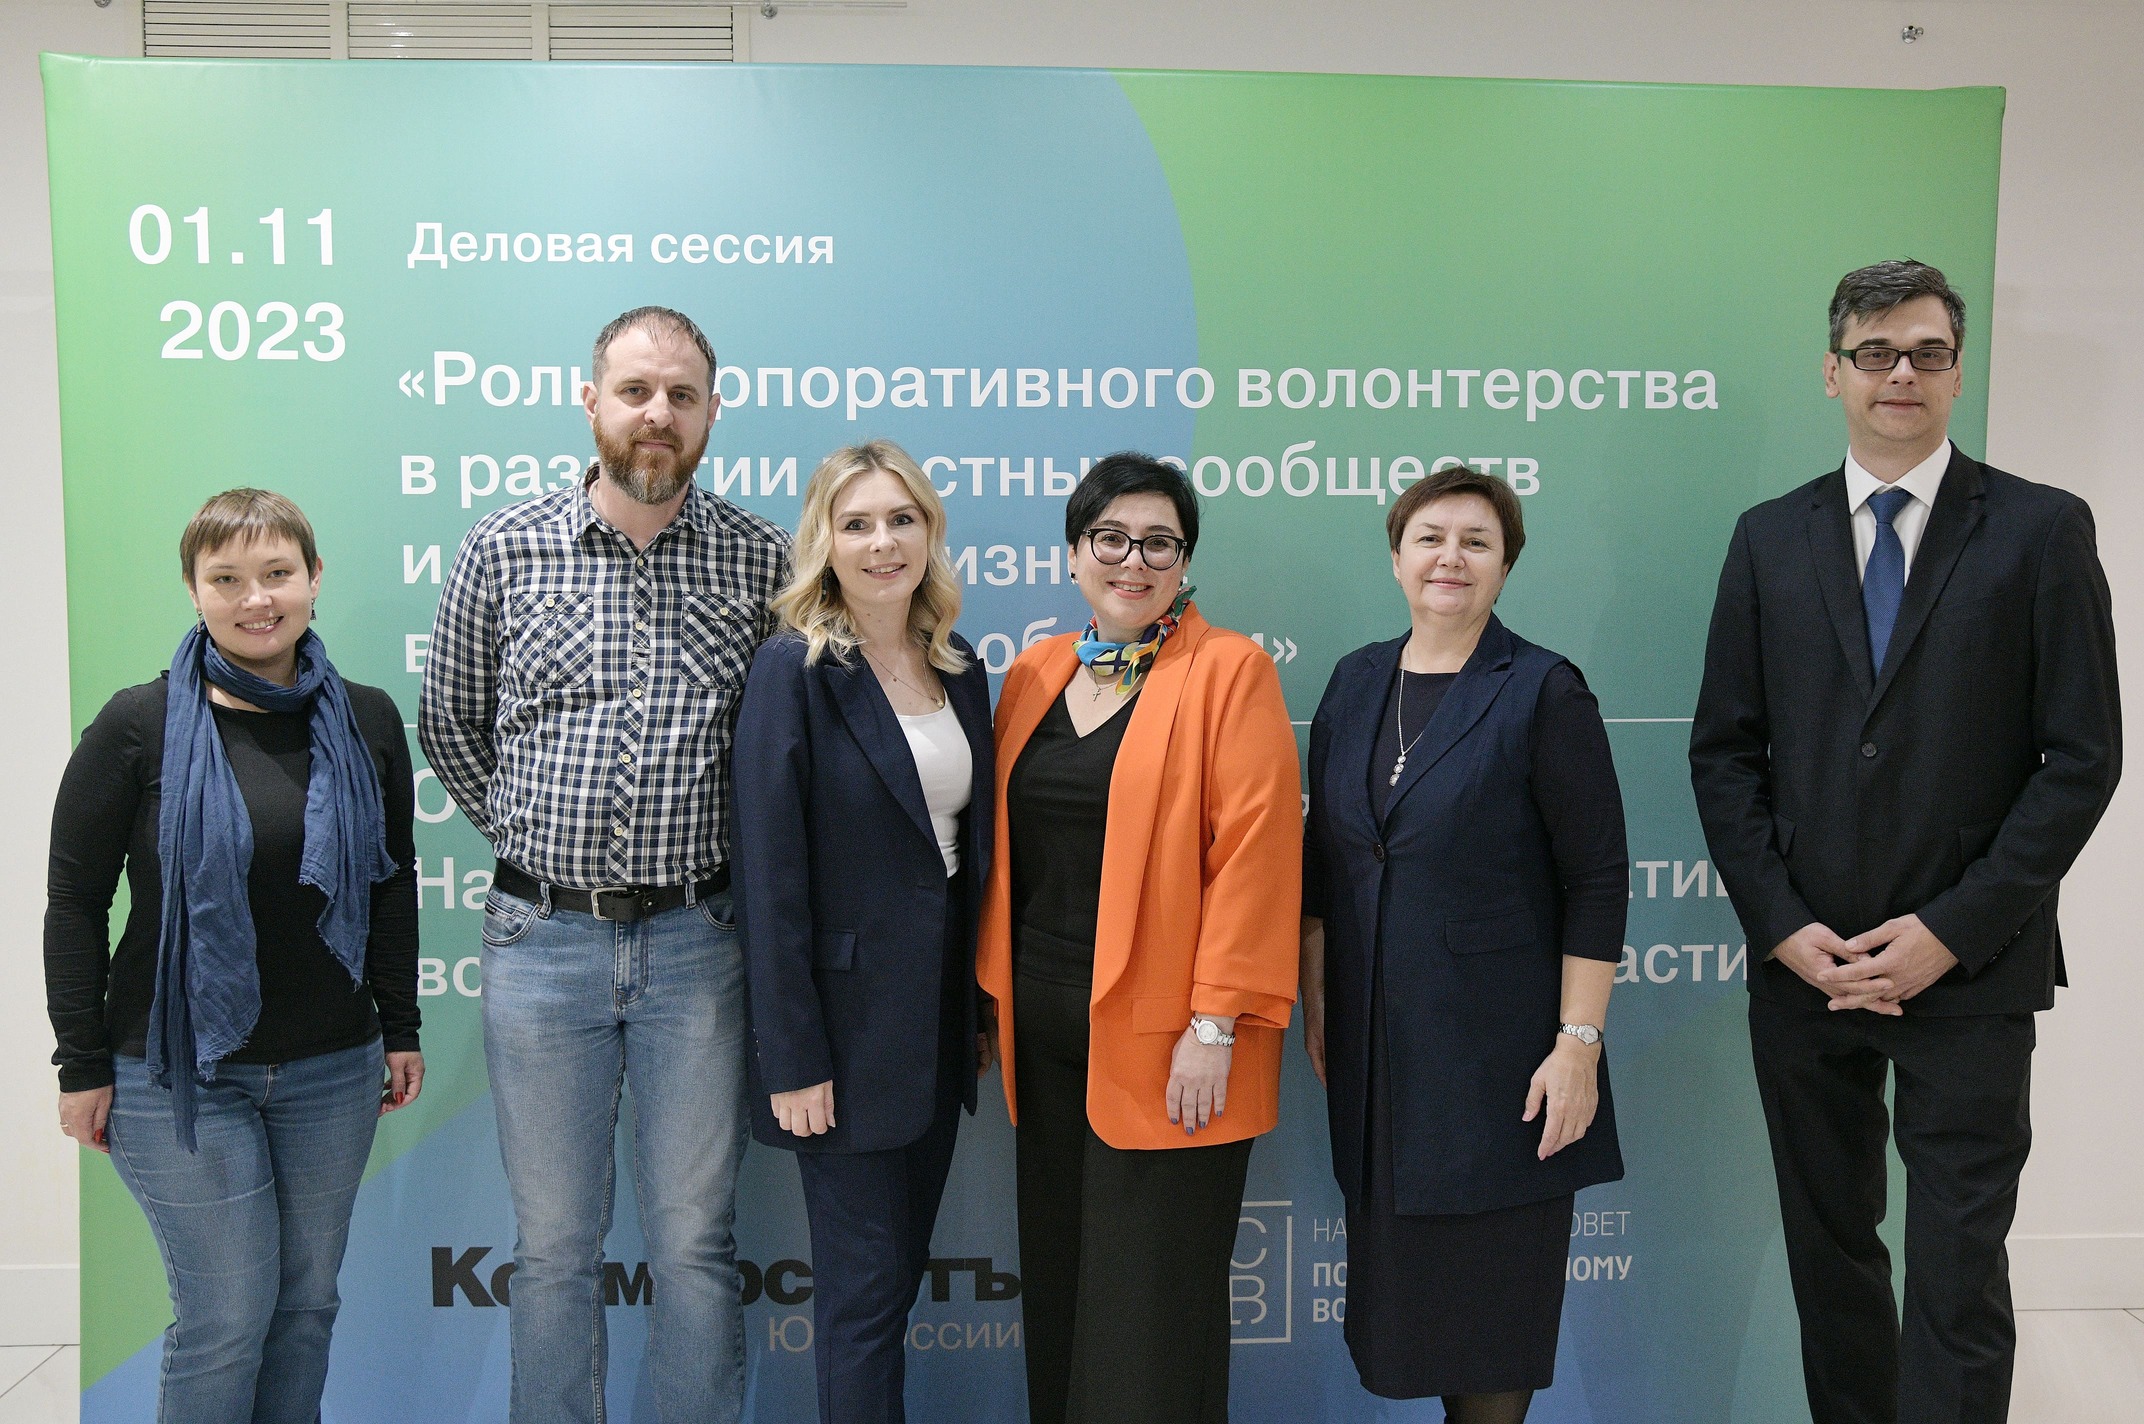 Представители Российского экологического общества приняли участие в сессии о корпоративном волонтерстве